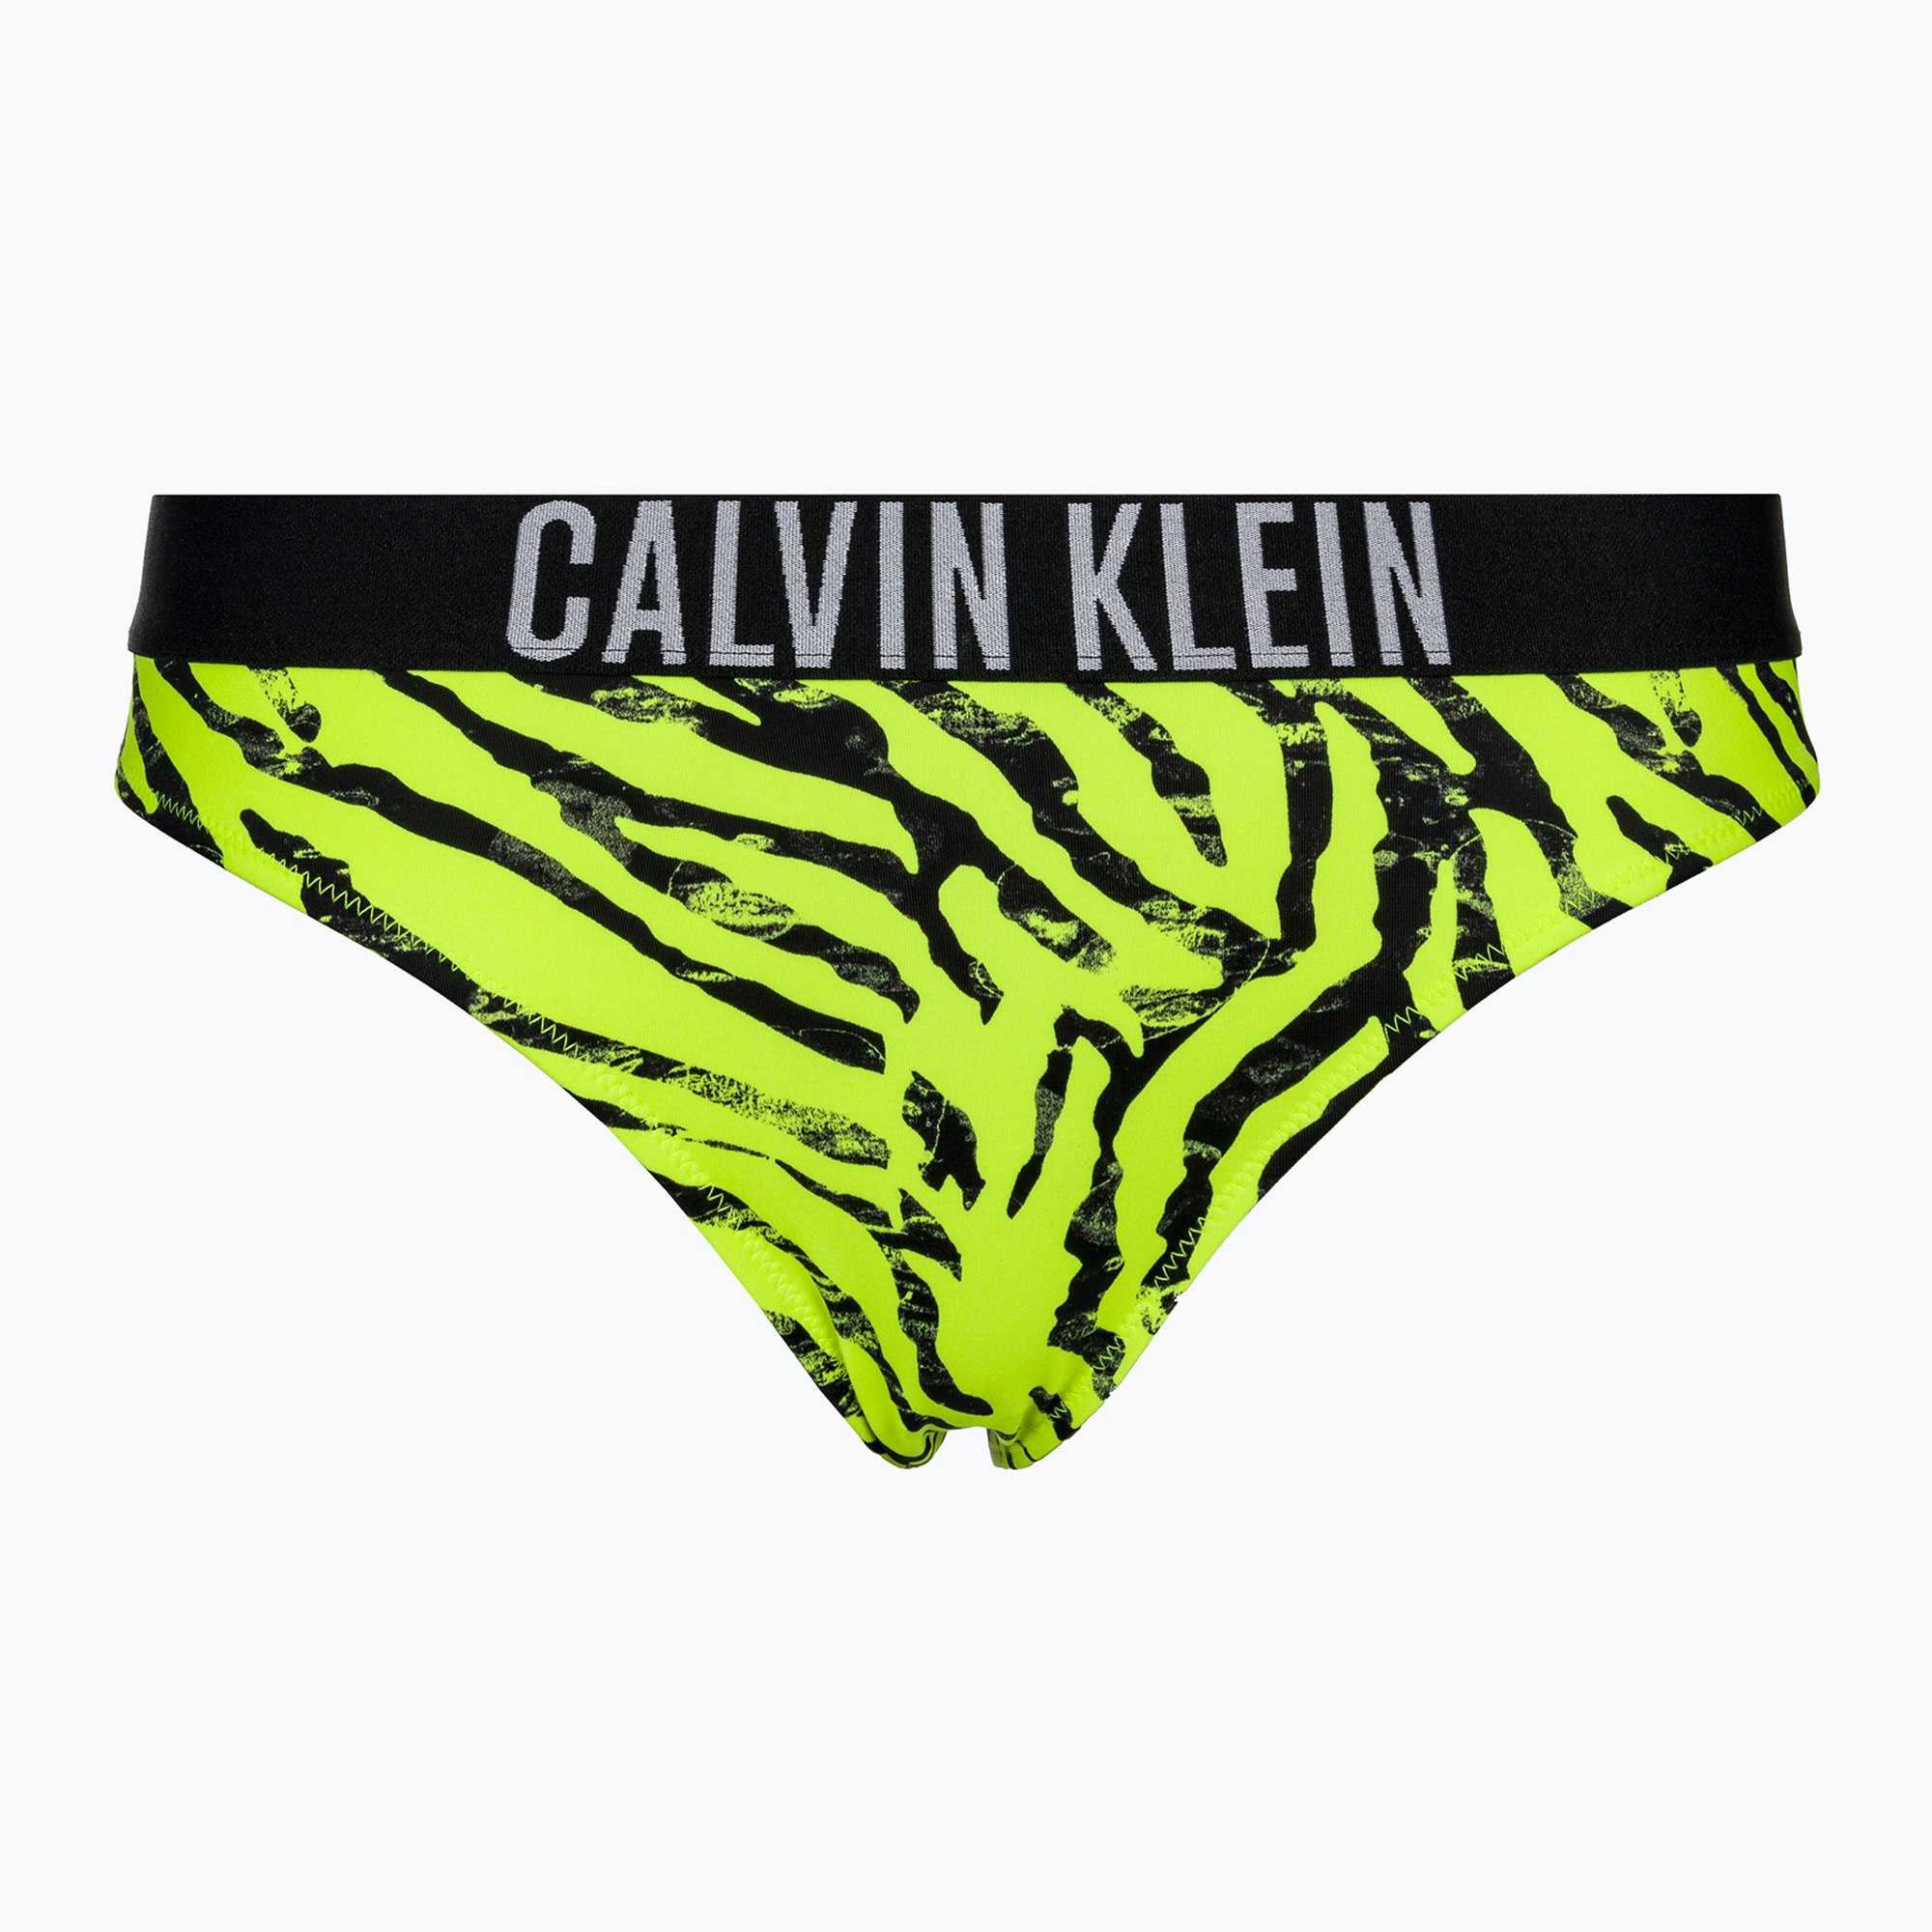 Partea de jos a costumului de baie Calvin Klein Bikini Print zebra citrust burst